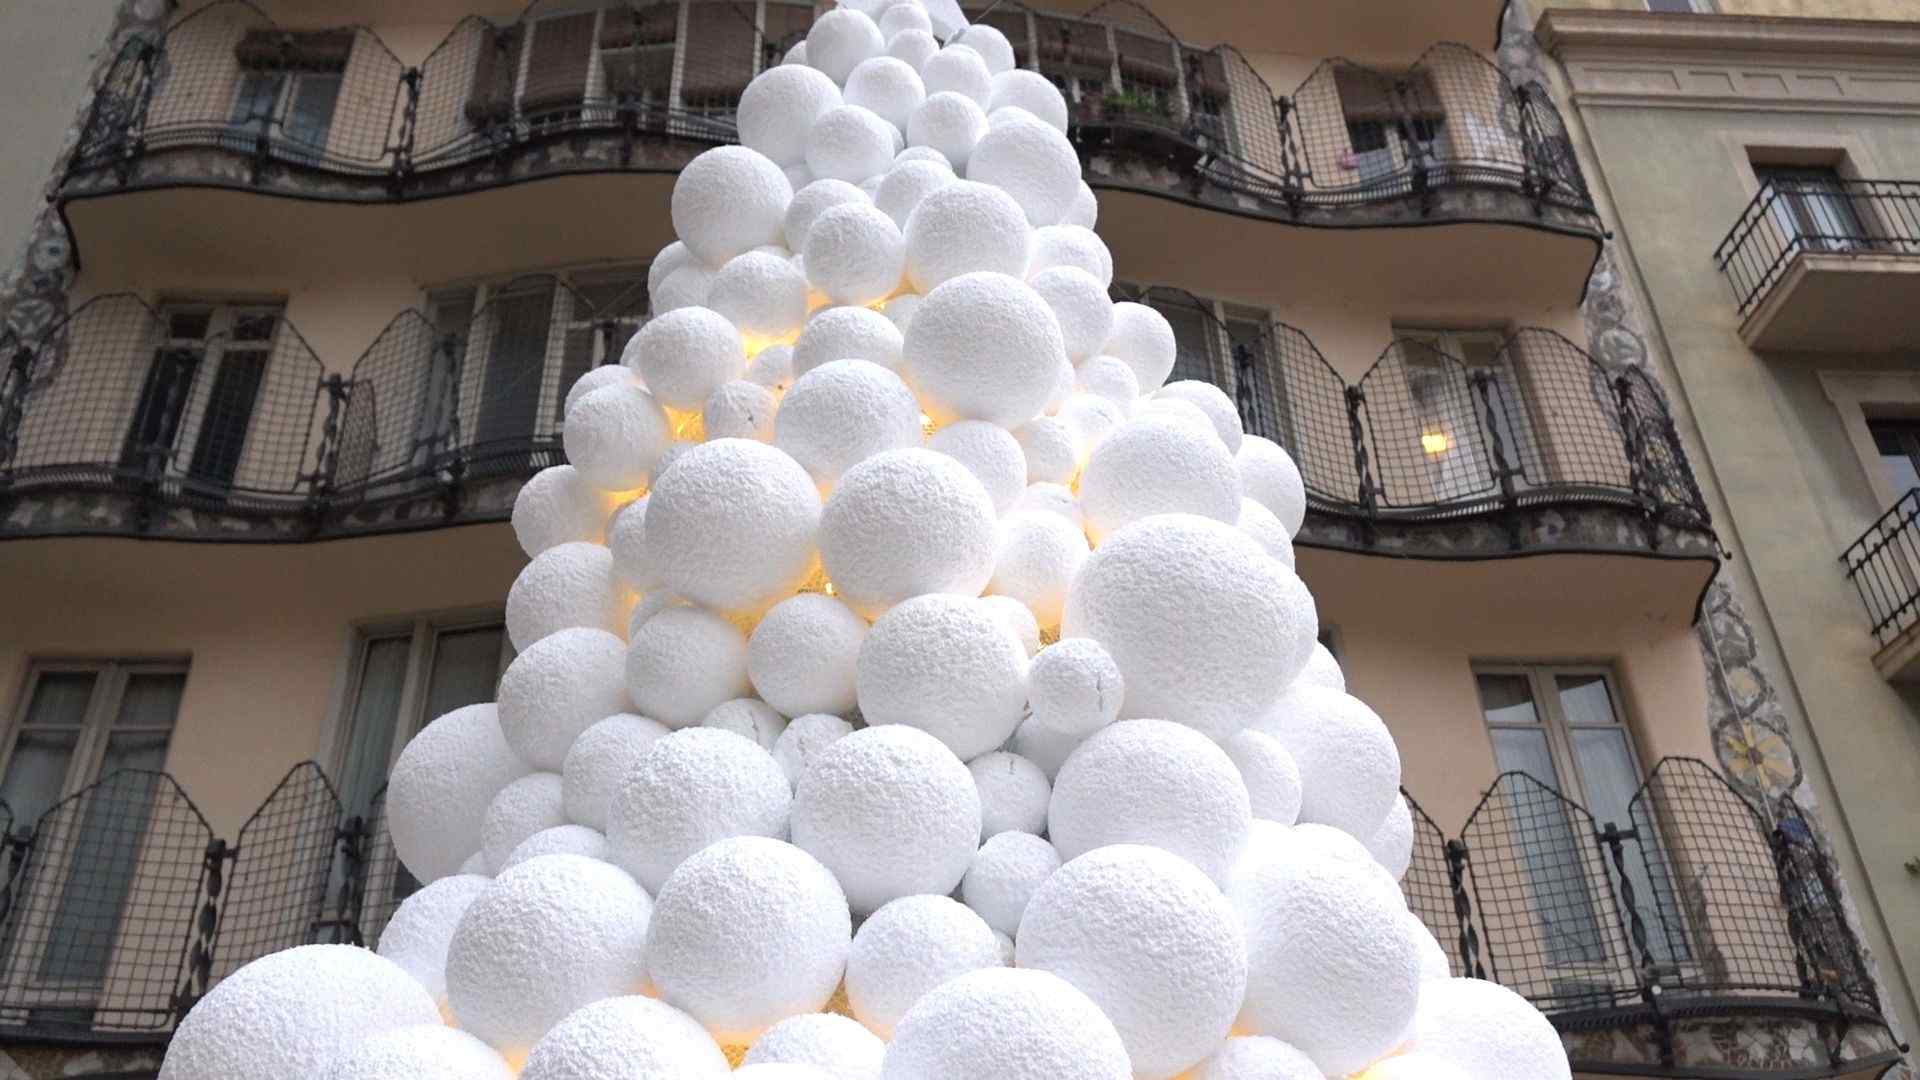 VÍDEO: Neva a la Casa Batlló